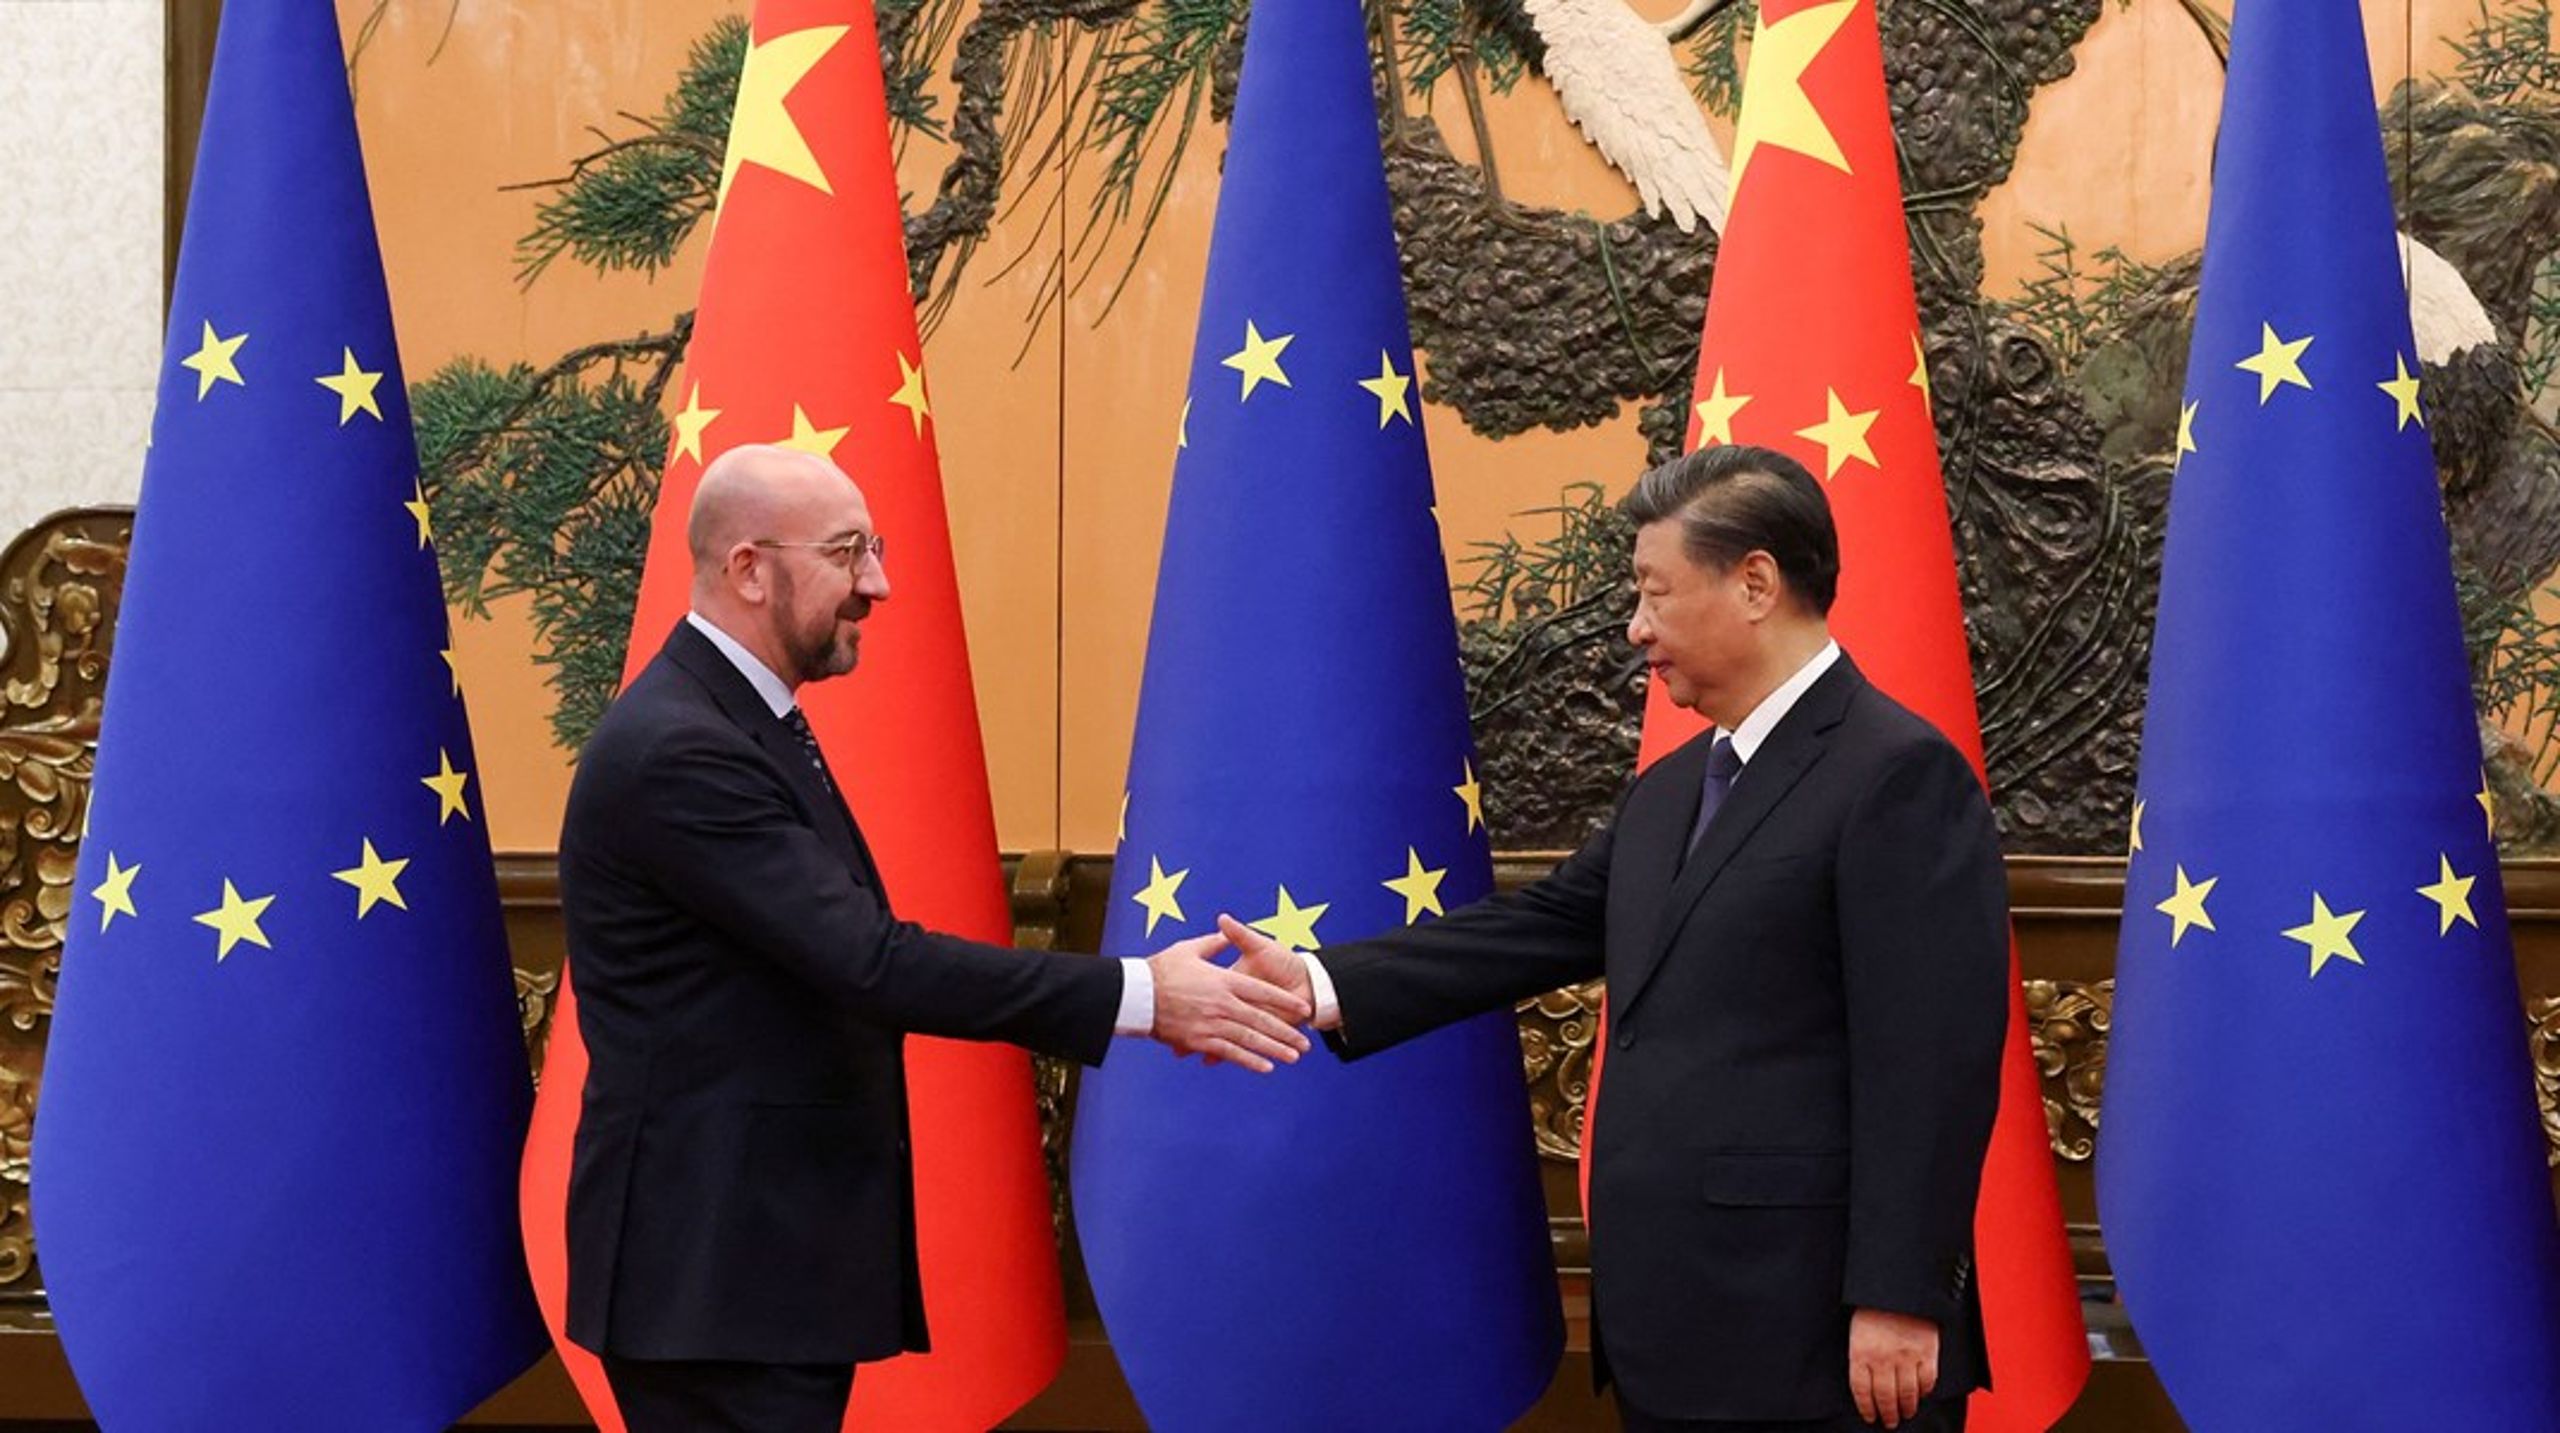 Europa
vil mindske sine afhængigheder til Kina frem for fuldstændigt at stoppe samkvemmet, skriver&nbsp;Anders Overvad.